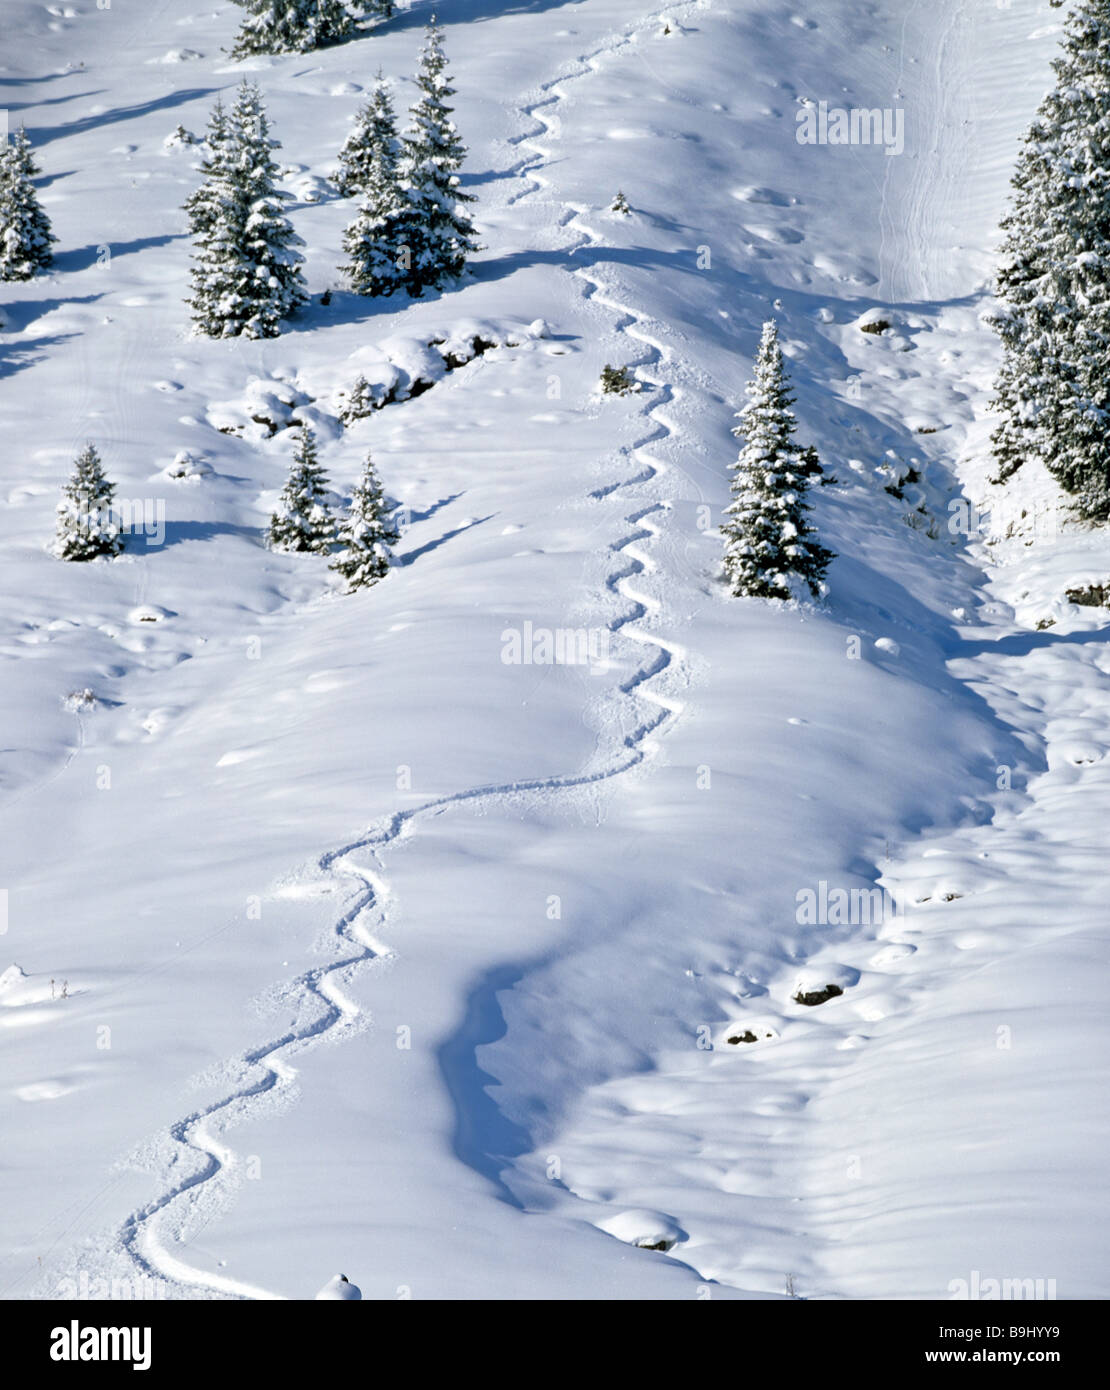 Des sentiers de ski dans la poudreuse profonde, wedeling, snoe-couverts paysage d'hiver Banque D'Images